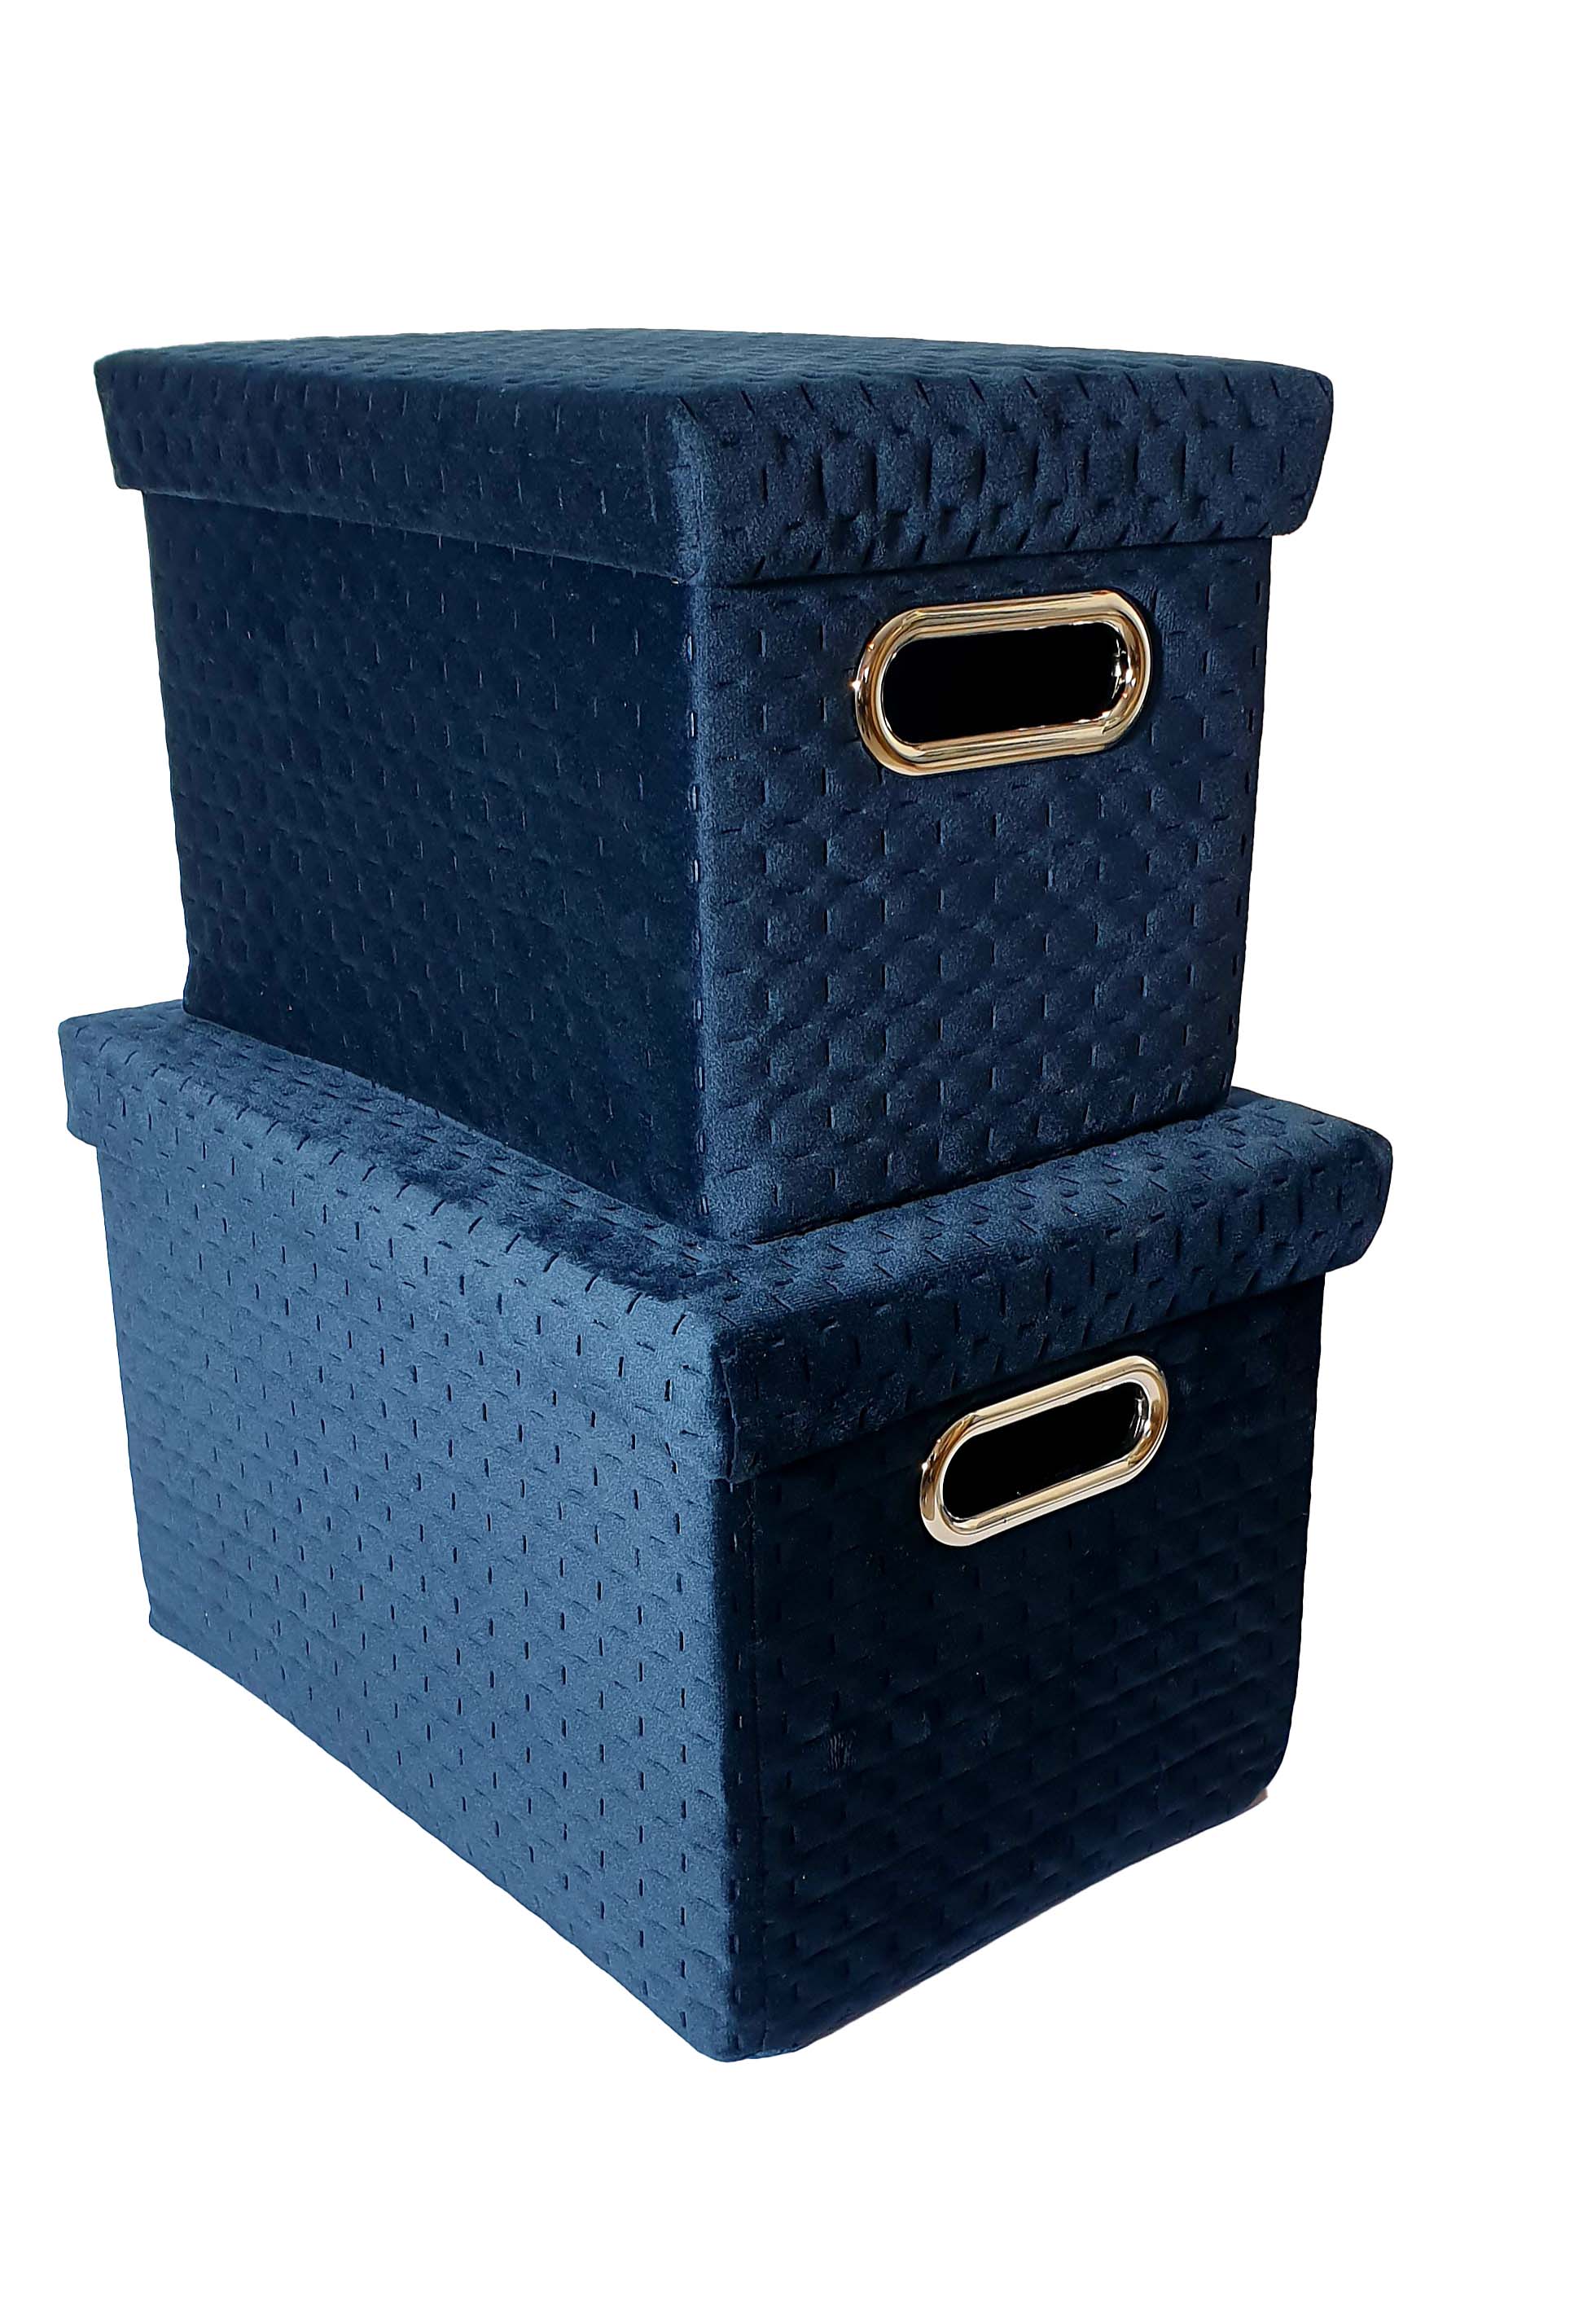 Edle Samt Aufbewahrungsboxen mit Deckel blau dunkelblau, 580023, 4025809580023, Box, Sammelbox